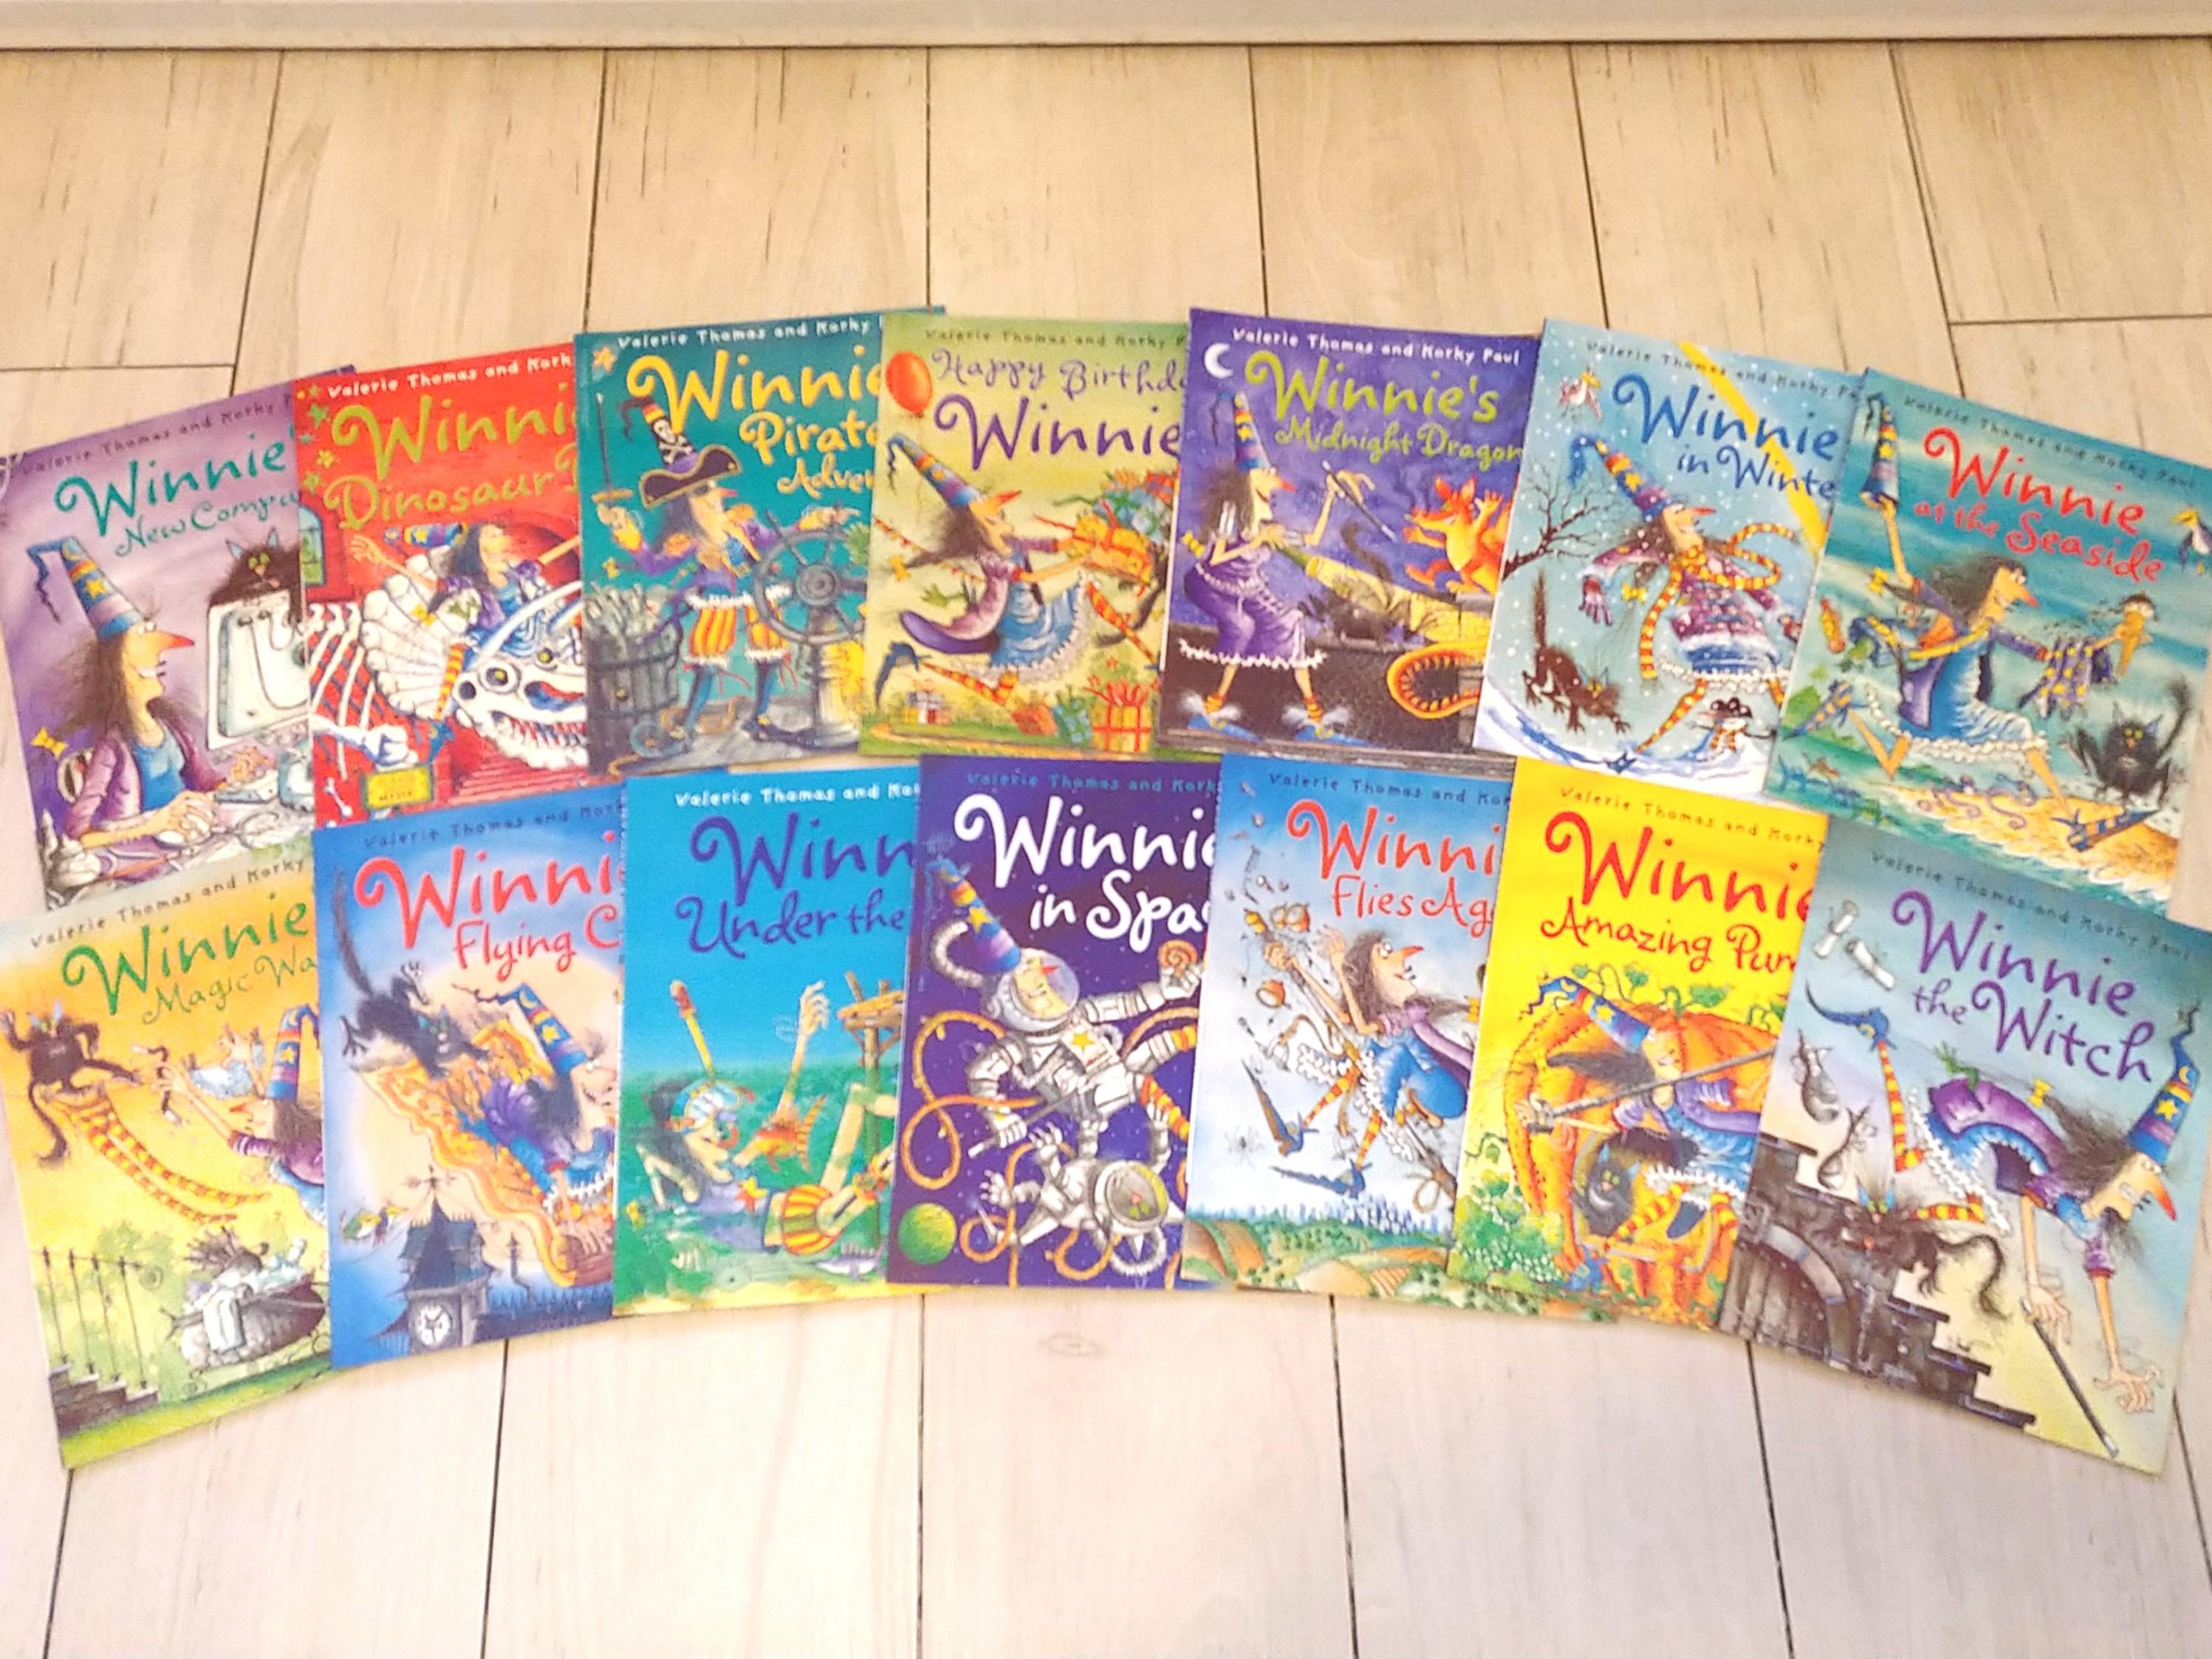 14冊) Winnie the Witch Collection (14 books) By Valerie Thomas and